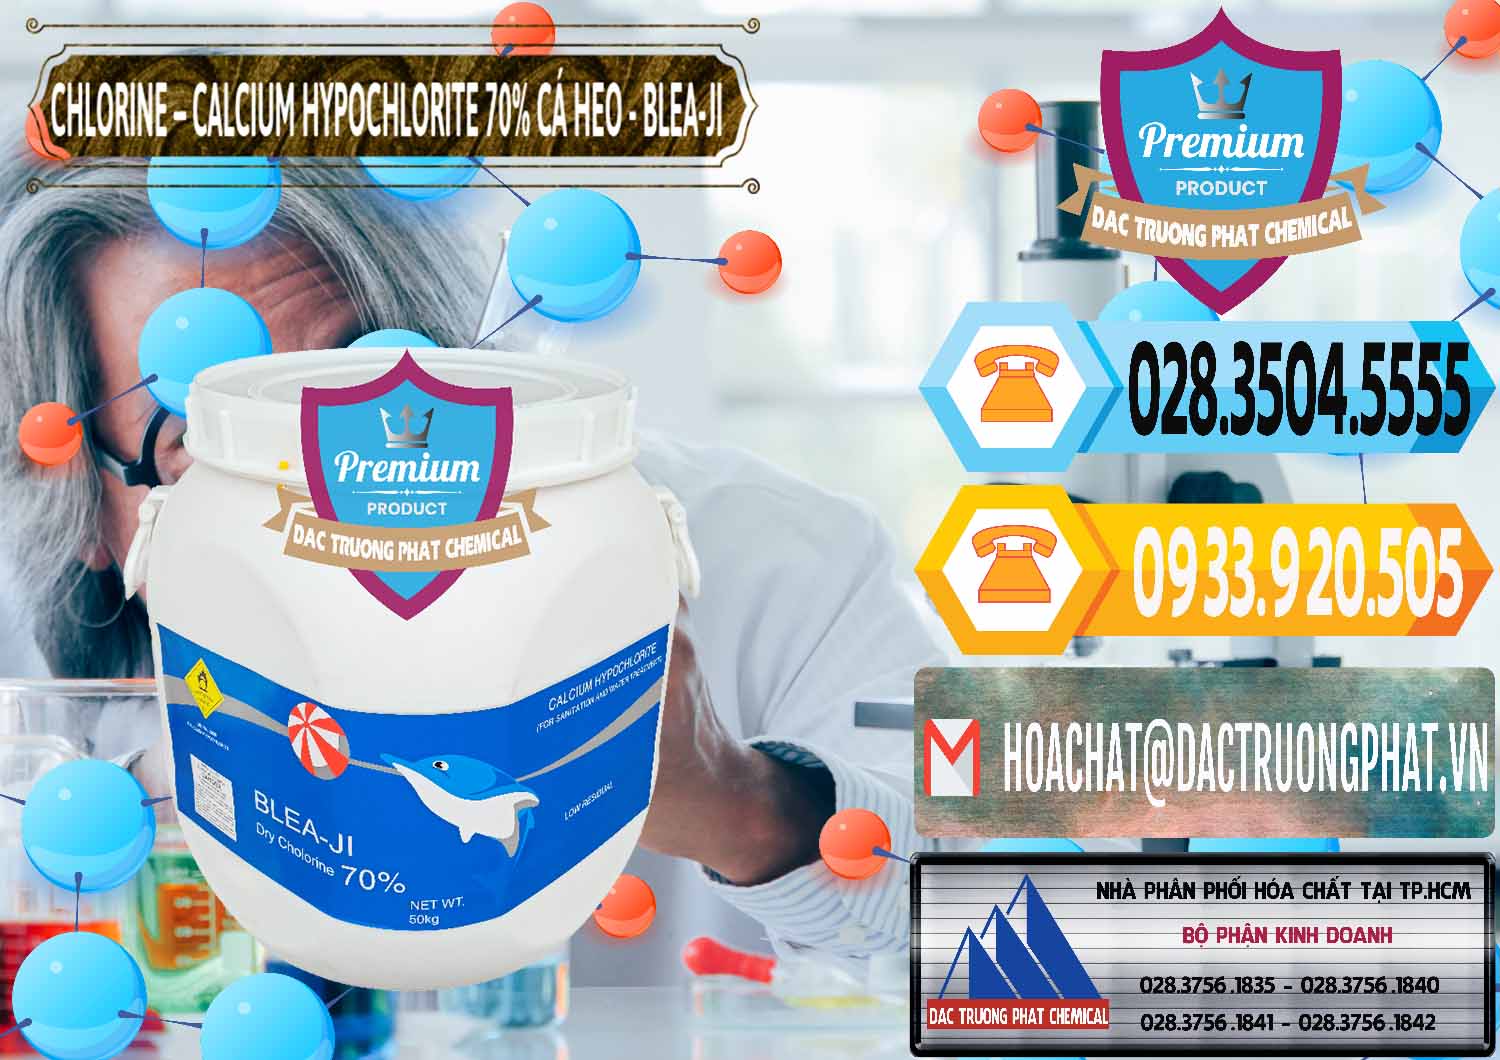 Nơi kinh doanh ( bán ) Clorin - Chlorine Cá Heo 70% Blea-Ji Trung Quốc China - 0056 - Đơn vị chuyên bán & phân phối hóa chất tại TP.HCM - hoachattayrua.net